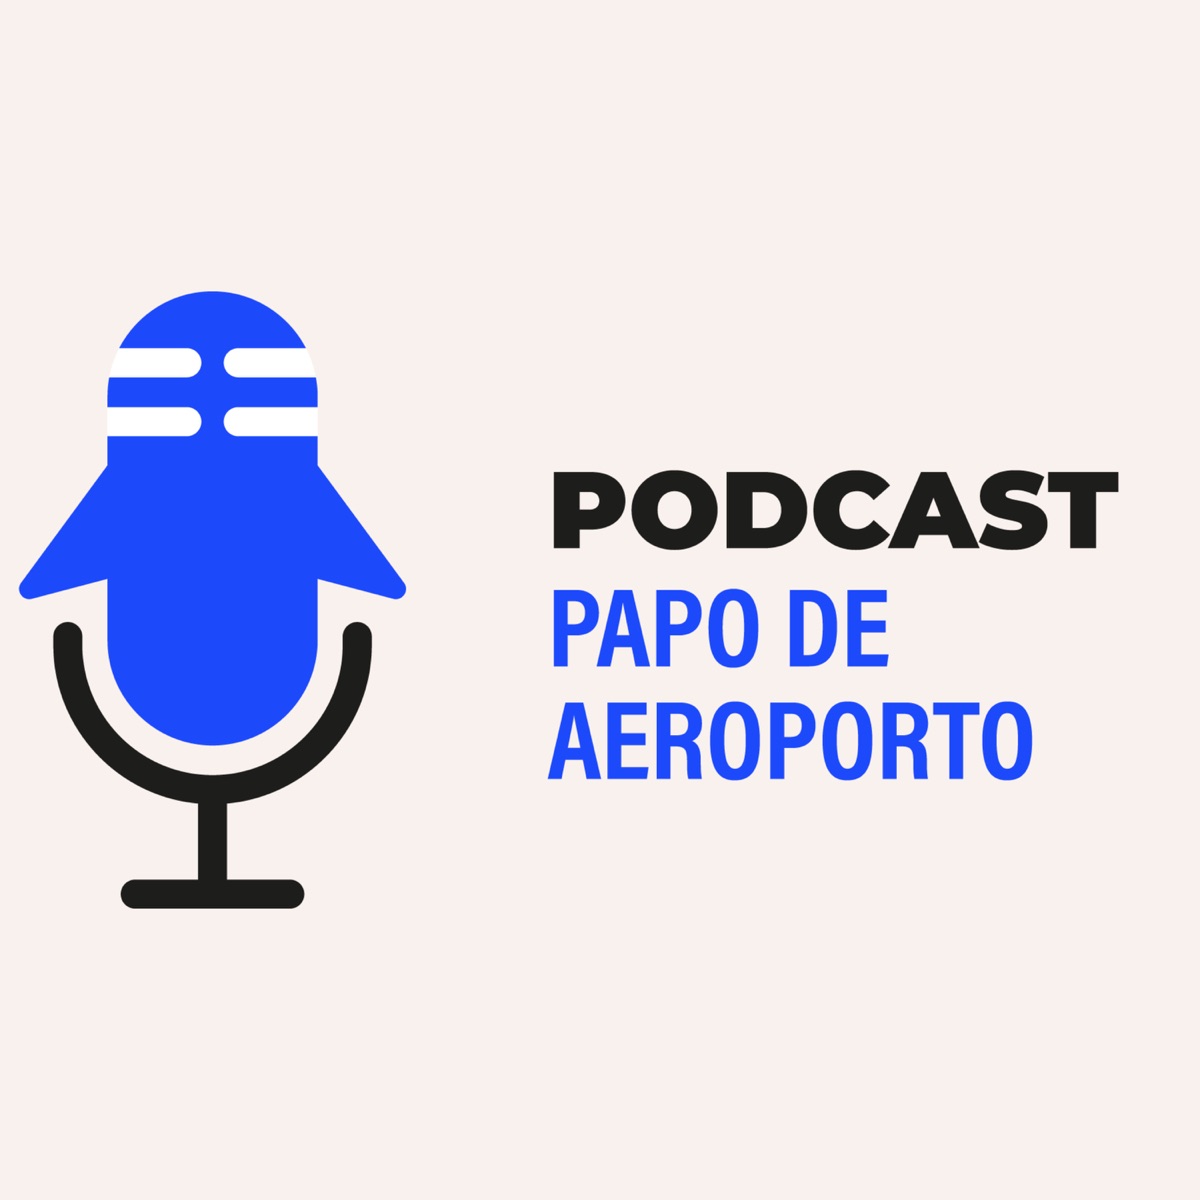 Papo de Segunda – Podcast – Podtail